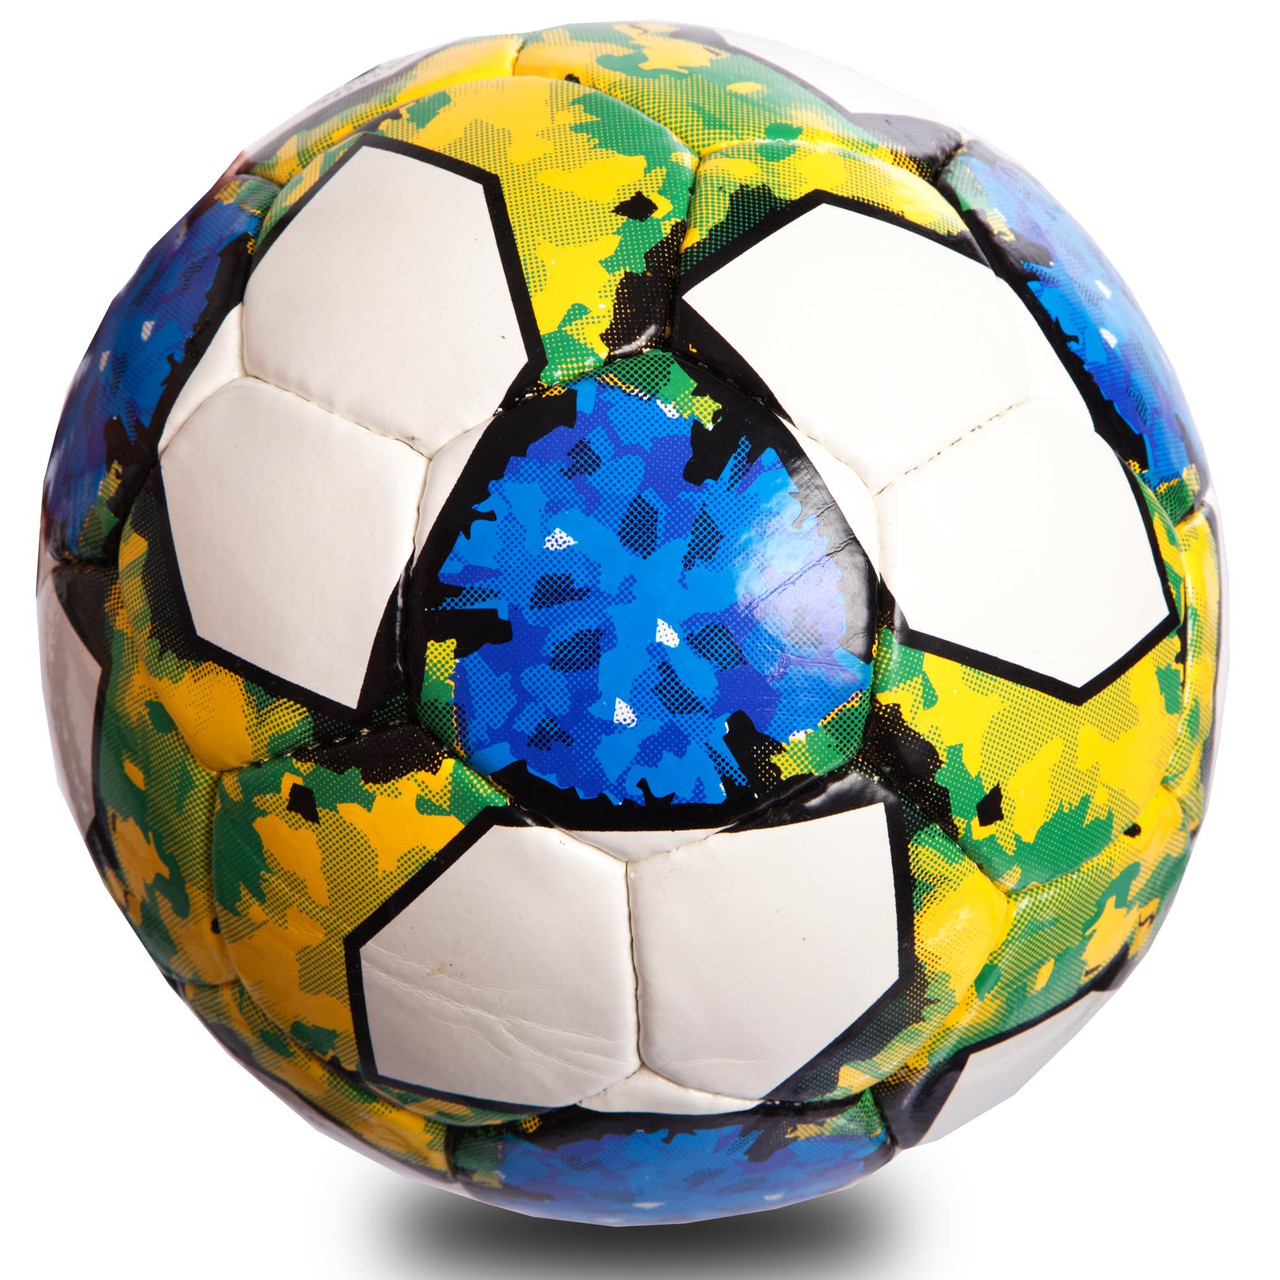 М'яч футбольний MATSA FB-0712 №5 PU білий-синій-зелений, фото 1